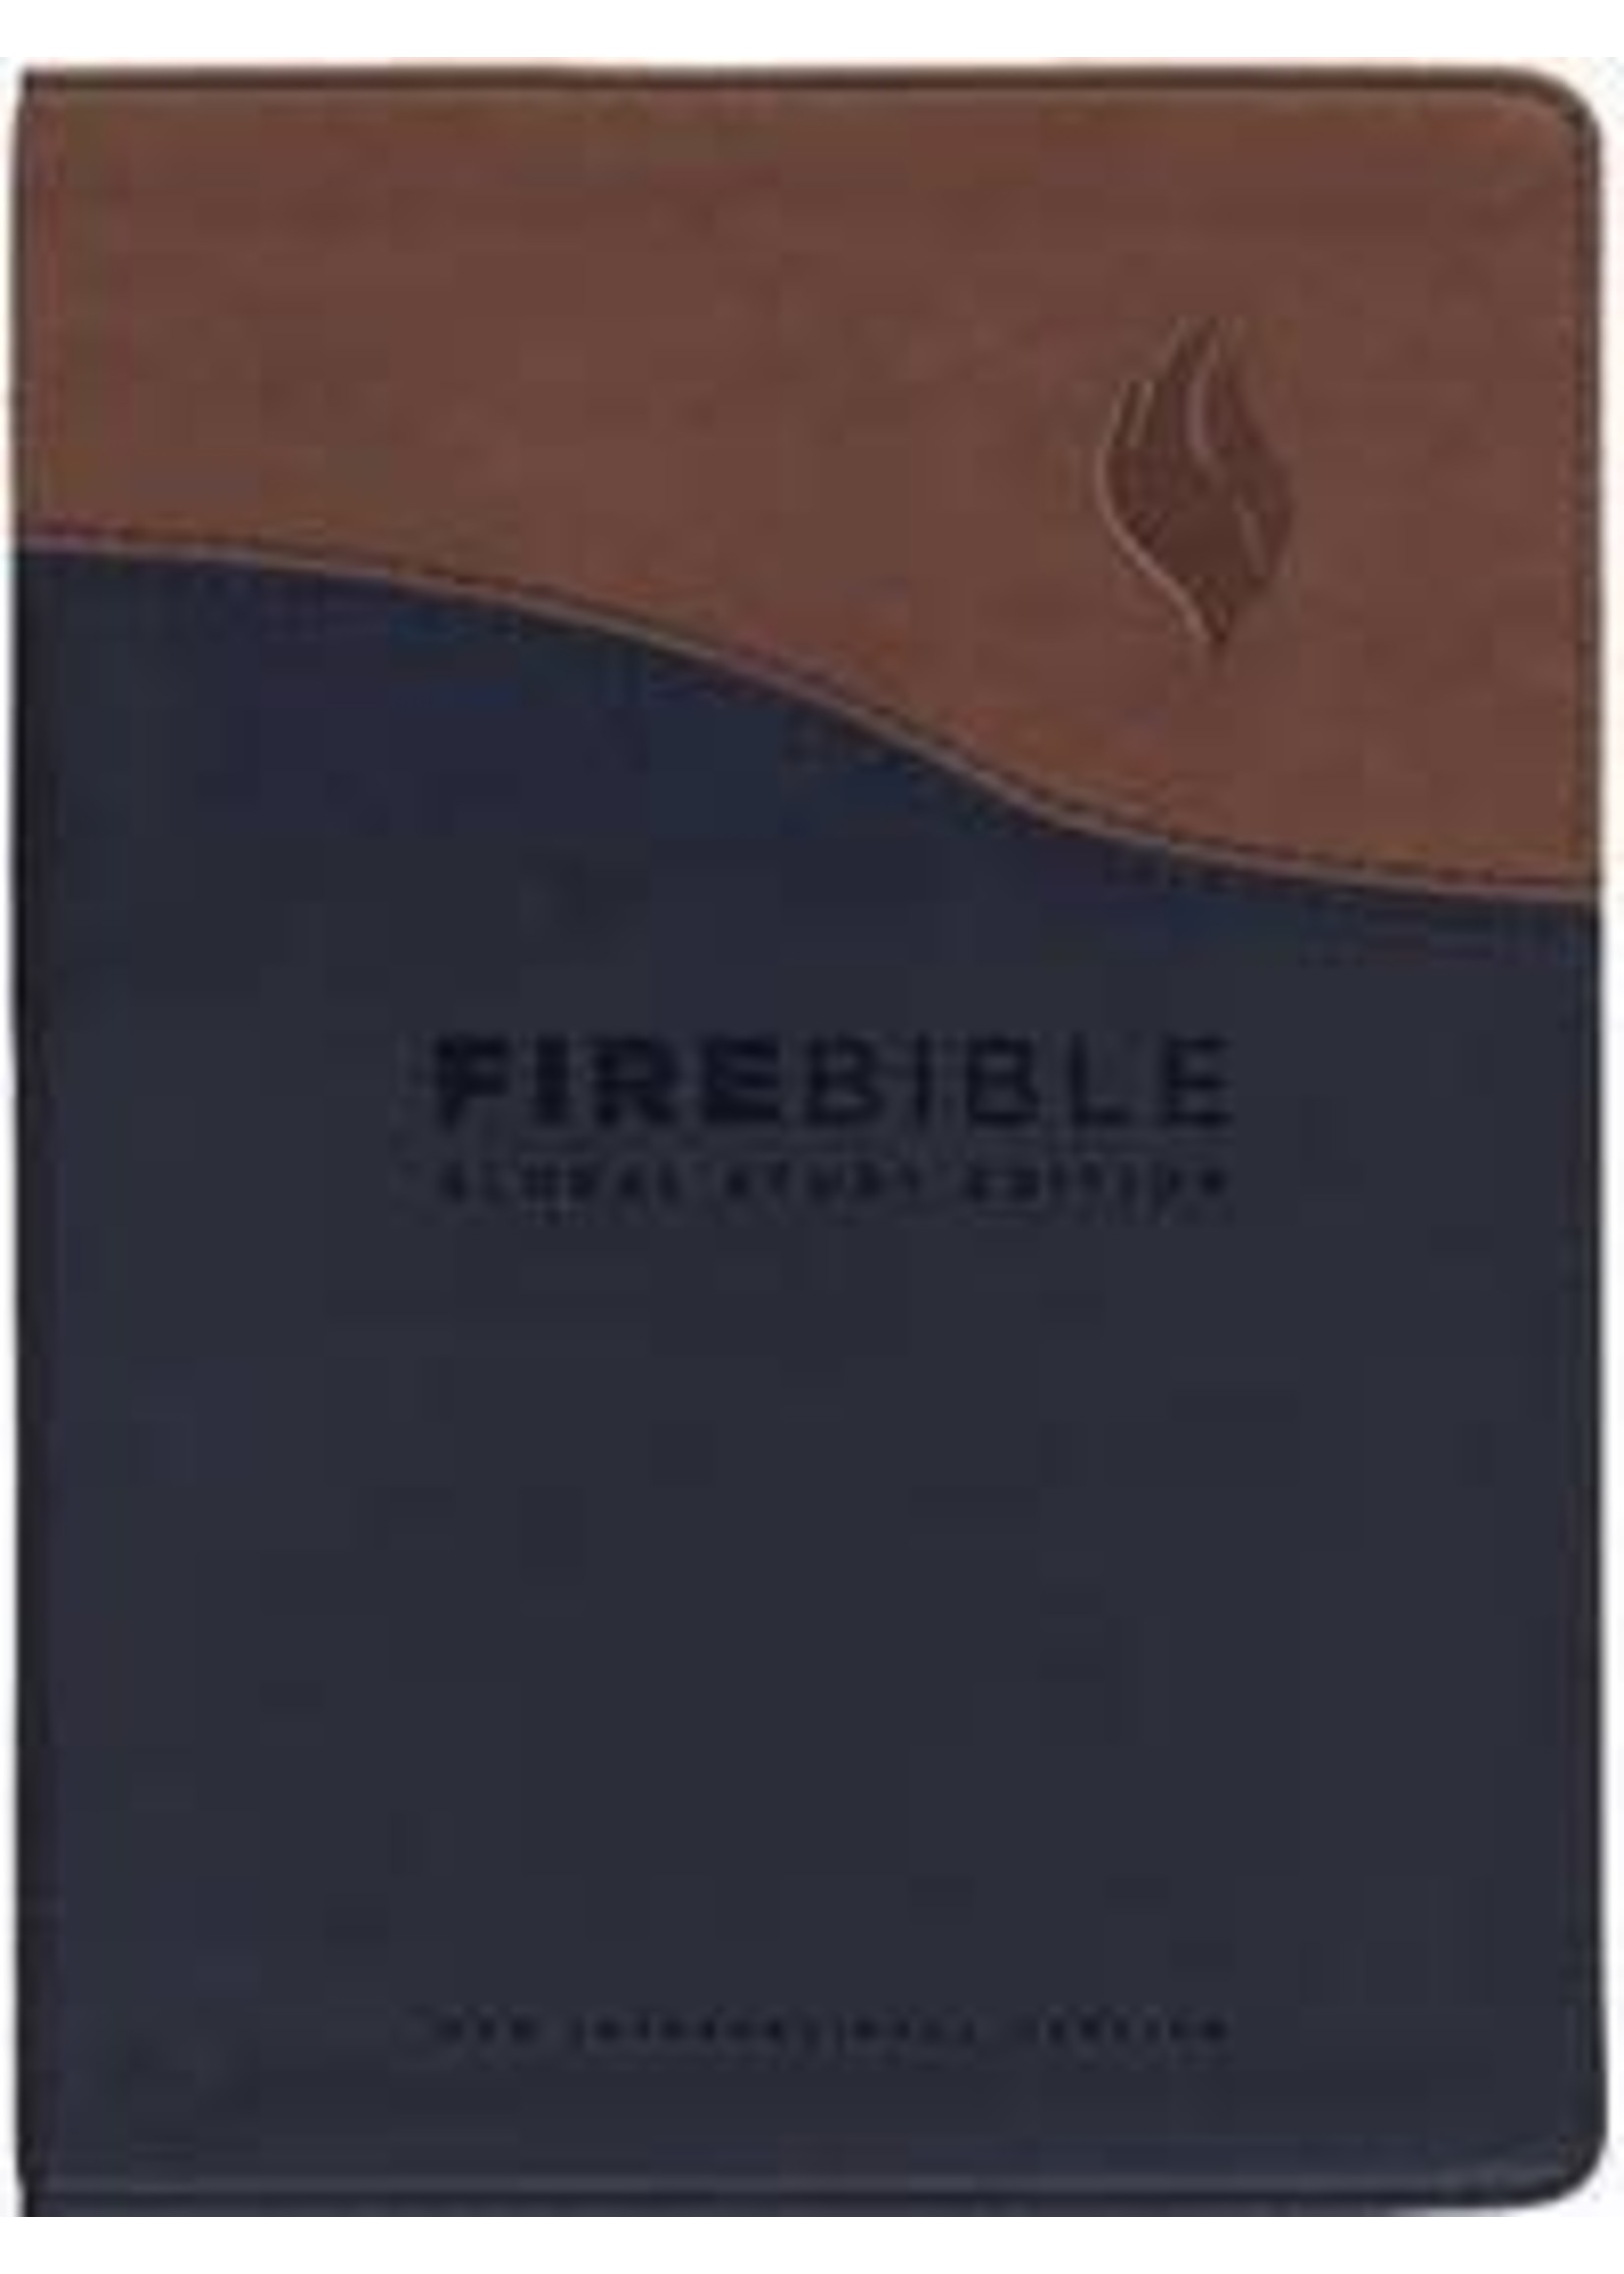 NIV Fire Bible Global Study Edition